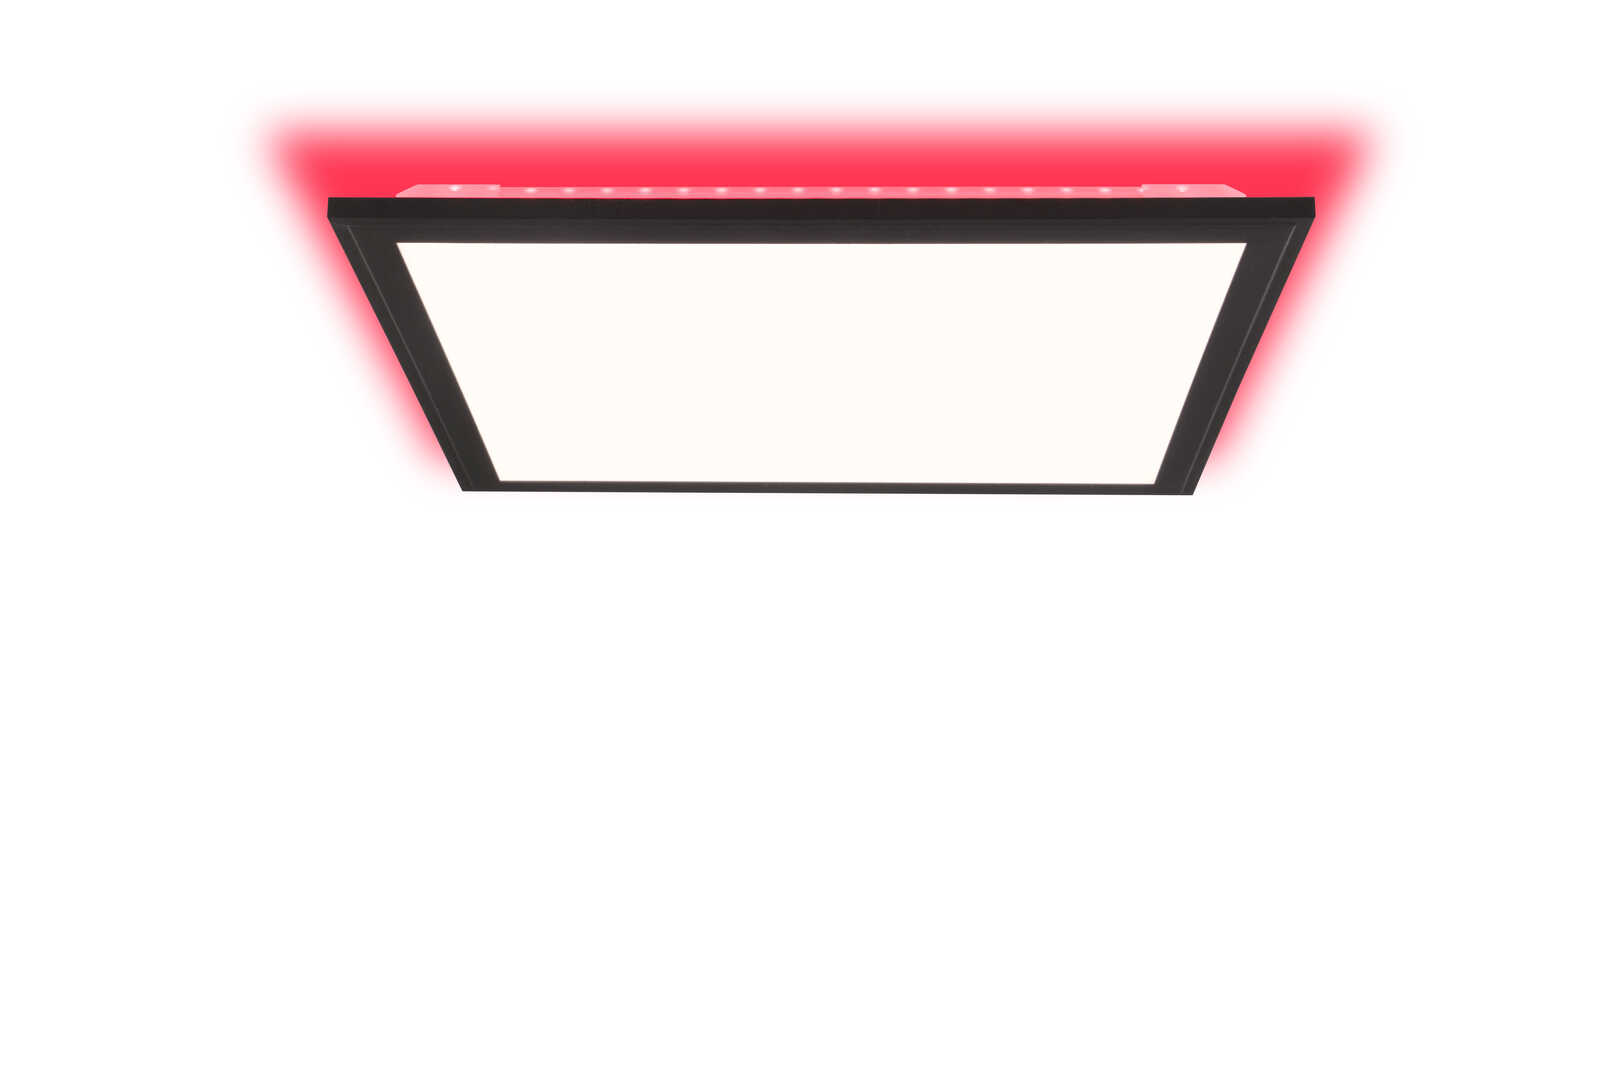             Kunststof plafondlamp - Albert 2 - Zwart
        